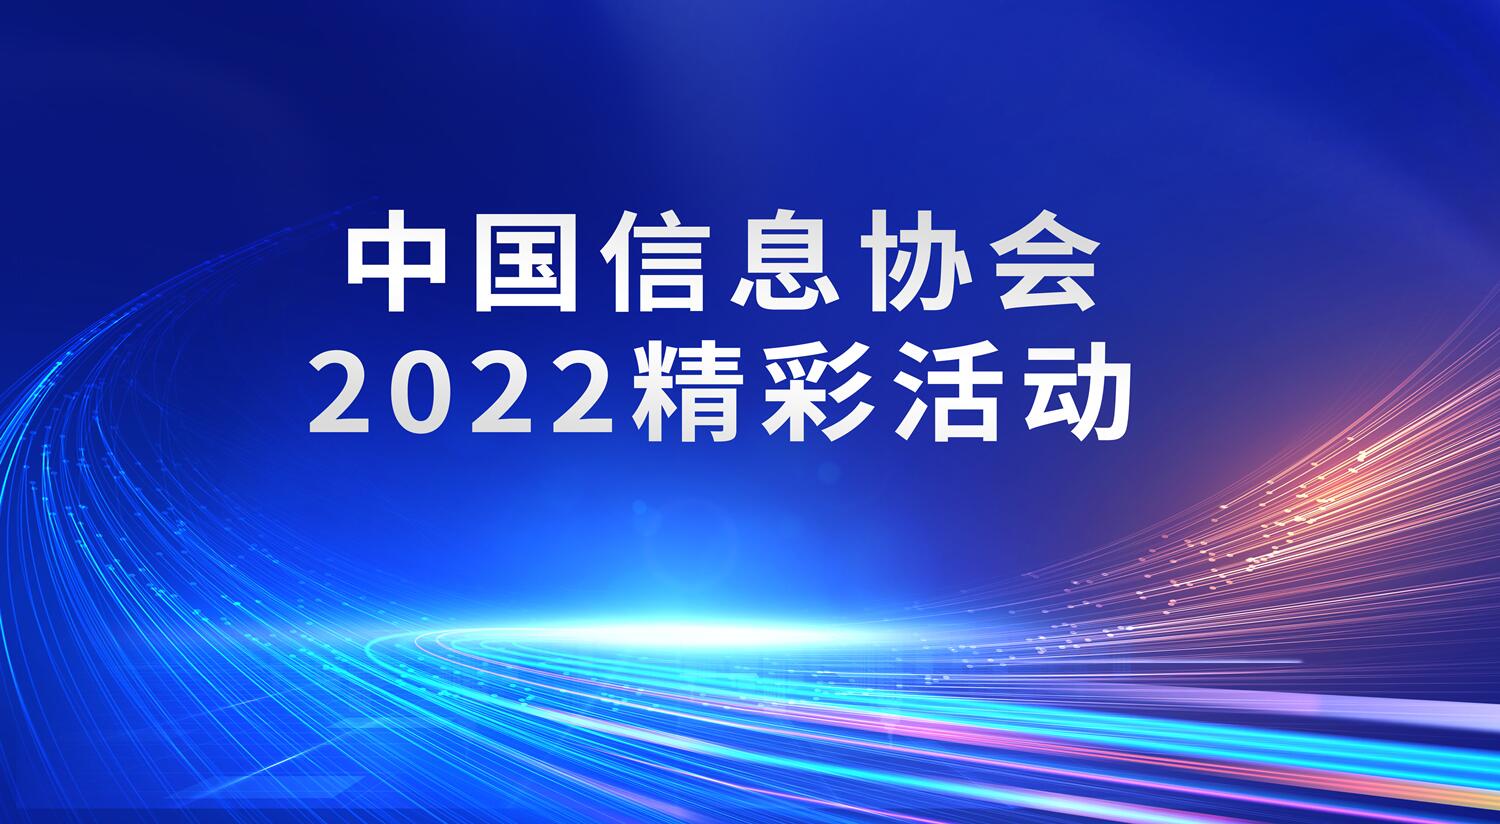 中国信息协会2022精彩活动